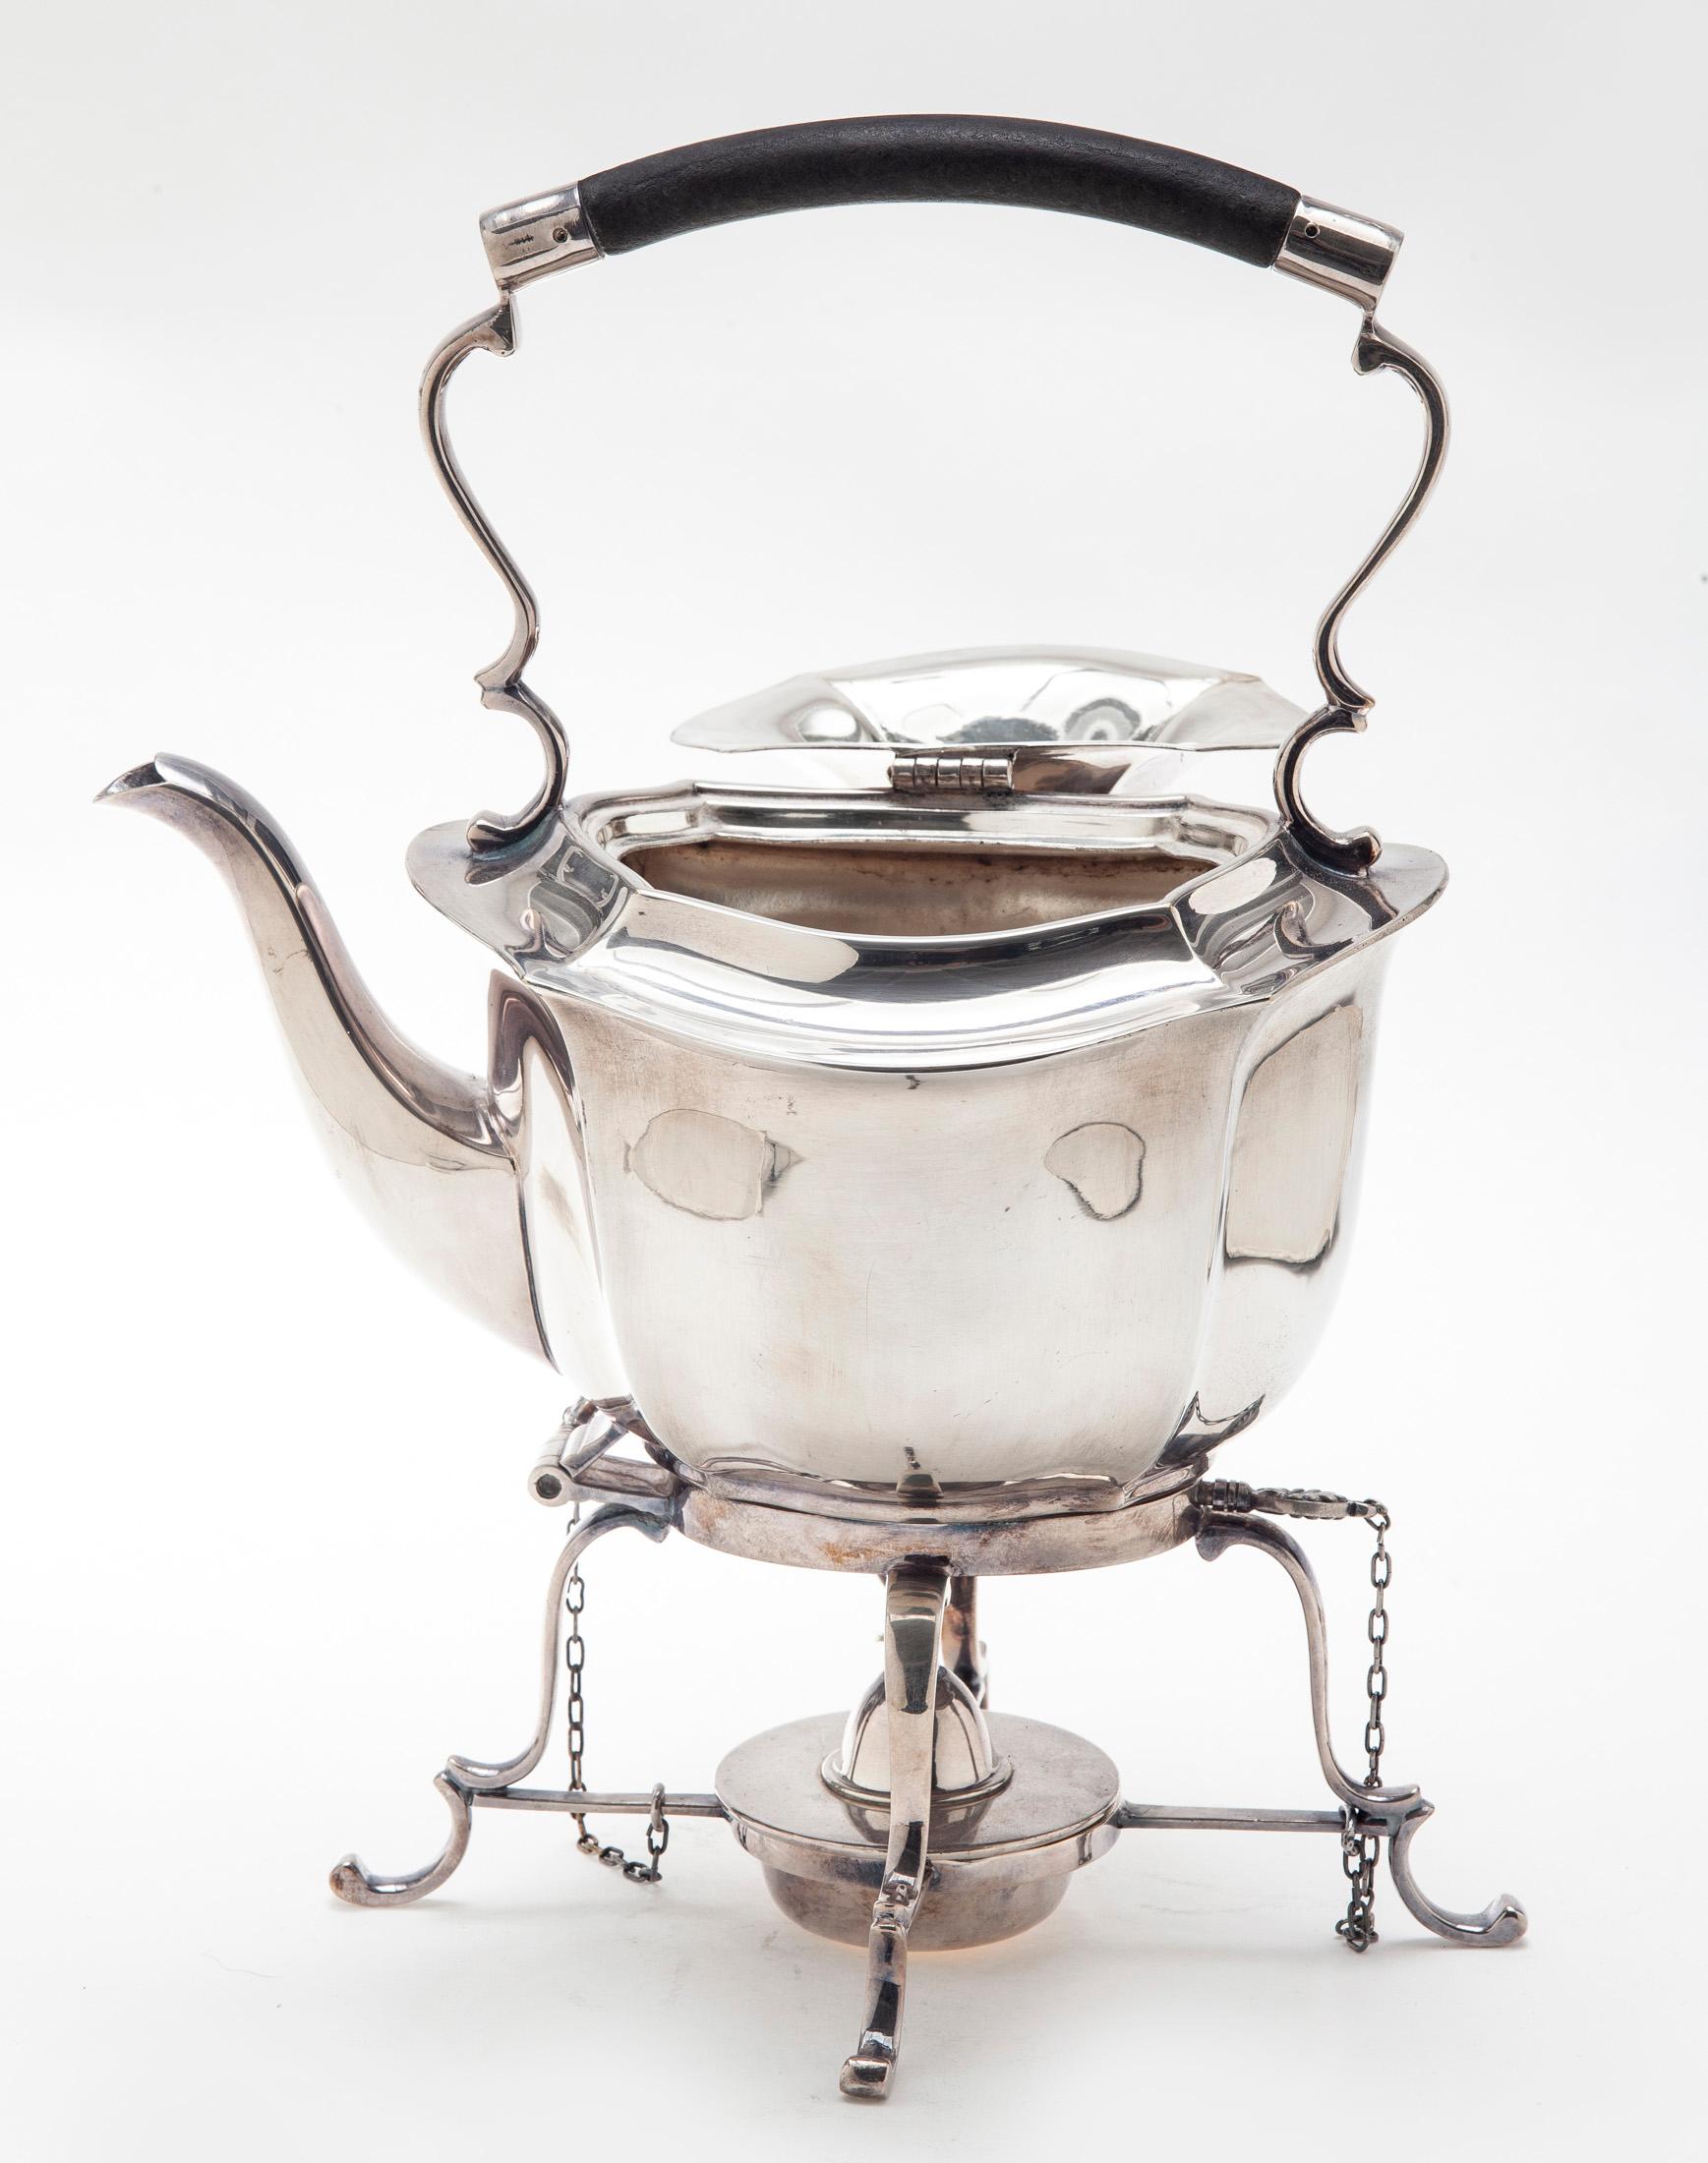 Ein außergewöhnliches Exemplar einer antiken englischen Sheffield-Teekanne aus Silberblech auf einem Ständer in tadellosem Zustand.
Diese elegante Teekanne ist schlicht und ohne Schnörkel. Es ist mit einem bündigen Scharnier ausgestattet  die den